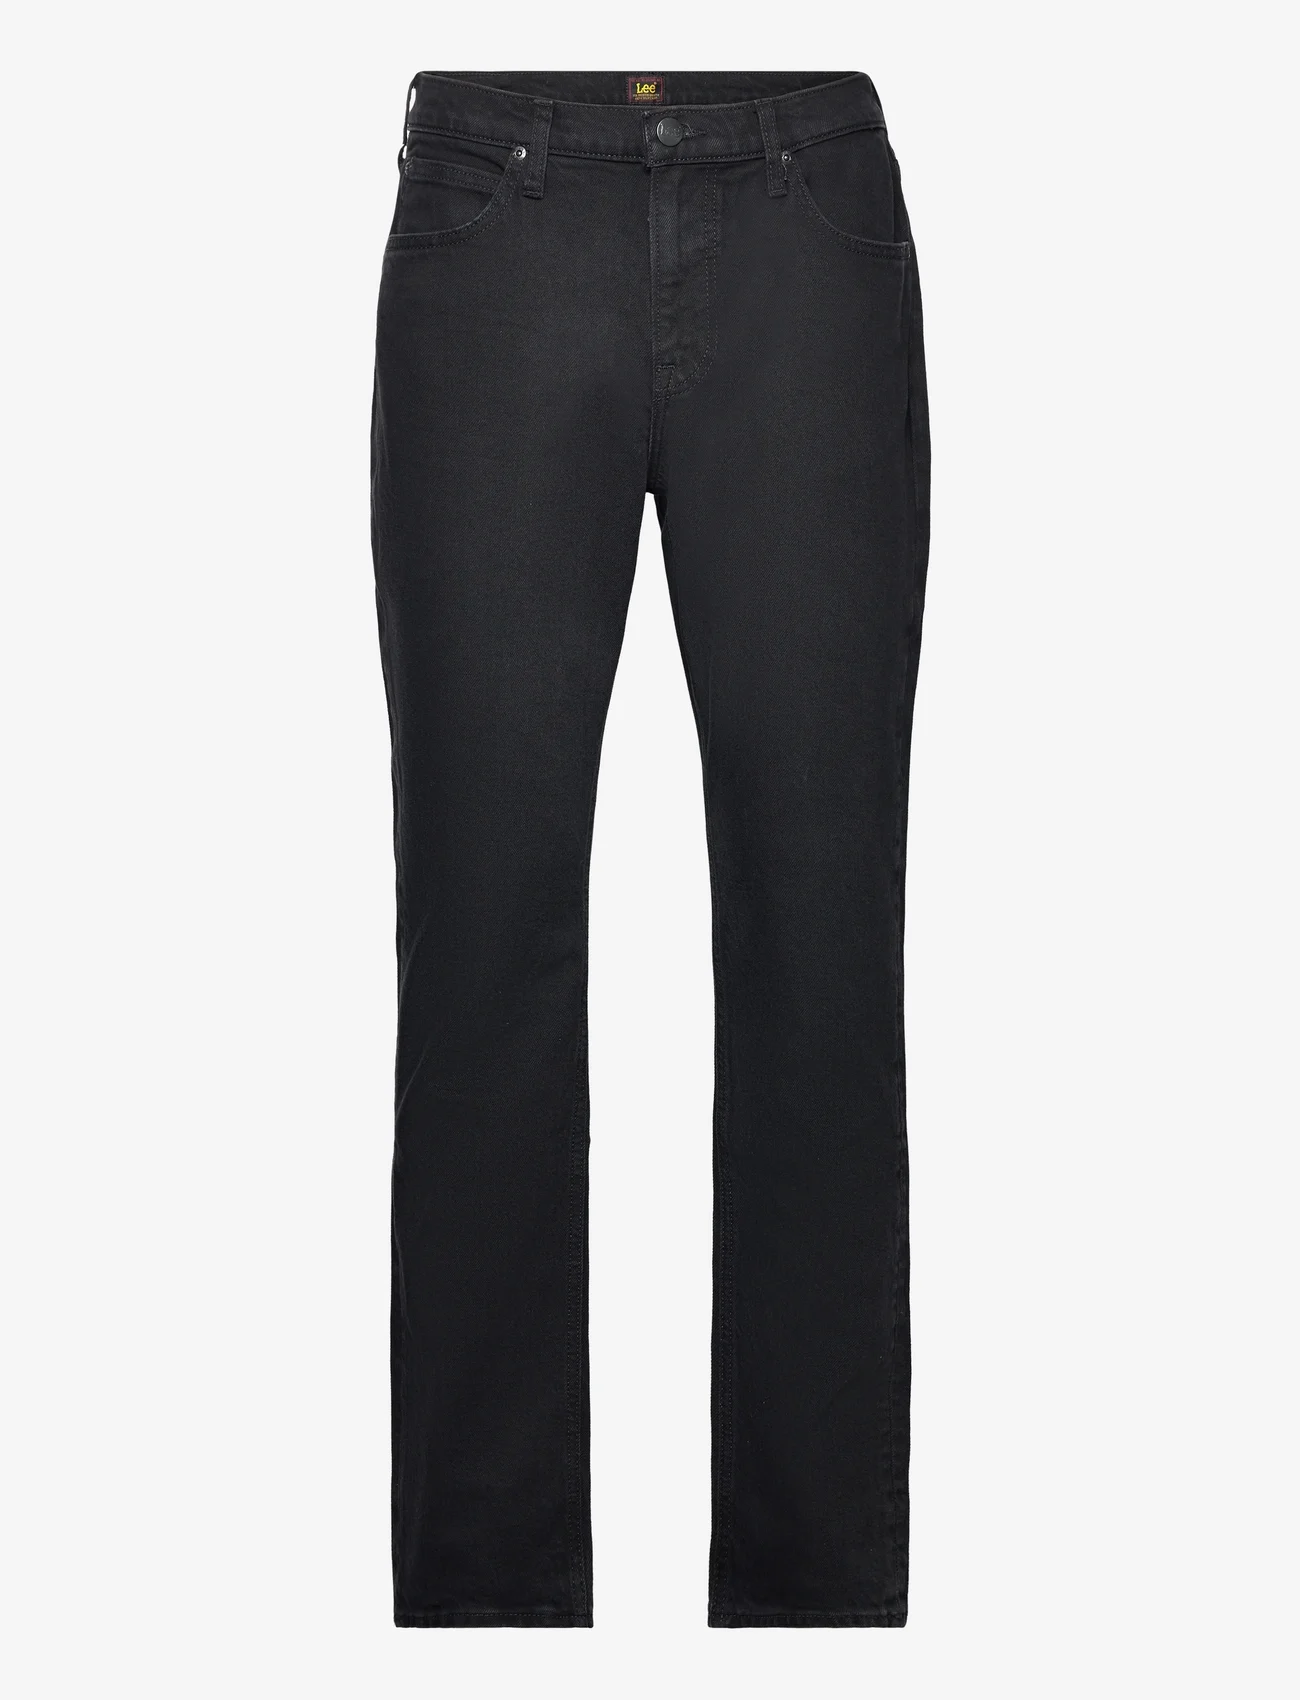 Lee Jeans - WEST - Įprasto kirpimo džinsai - black rinse - 0